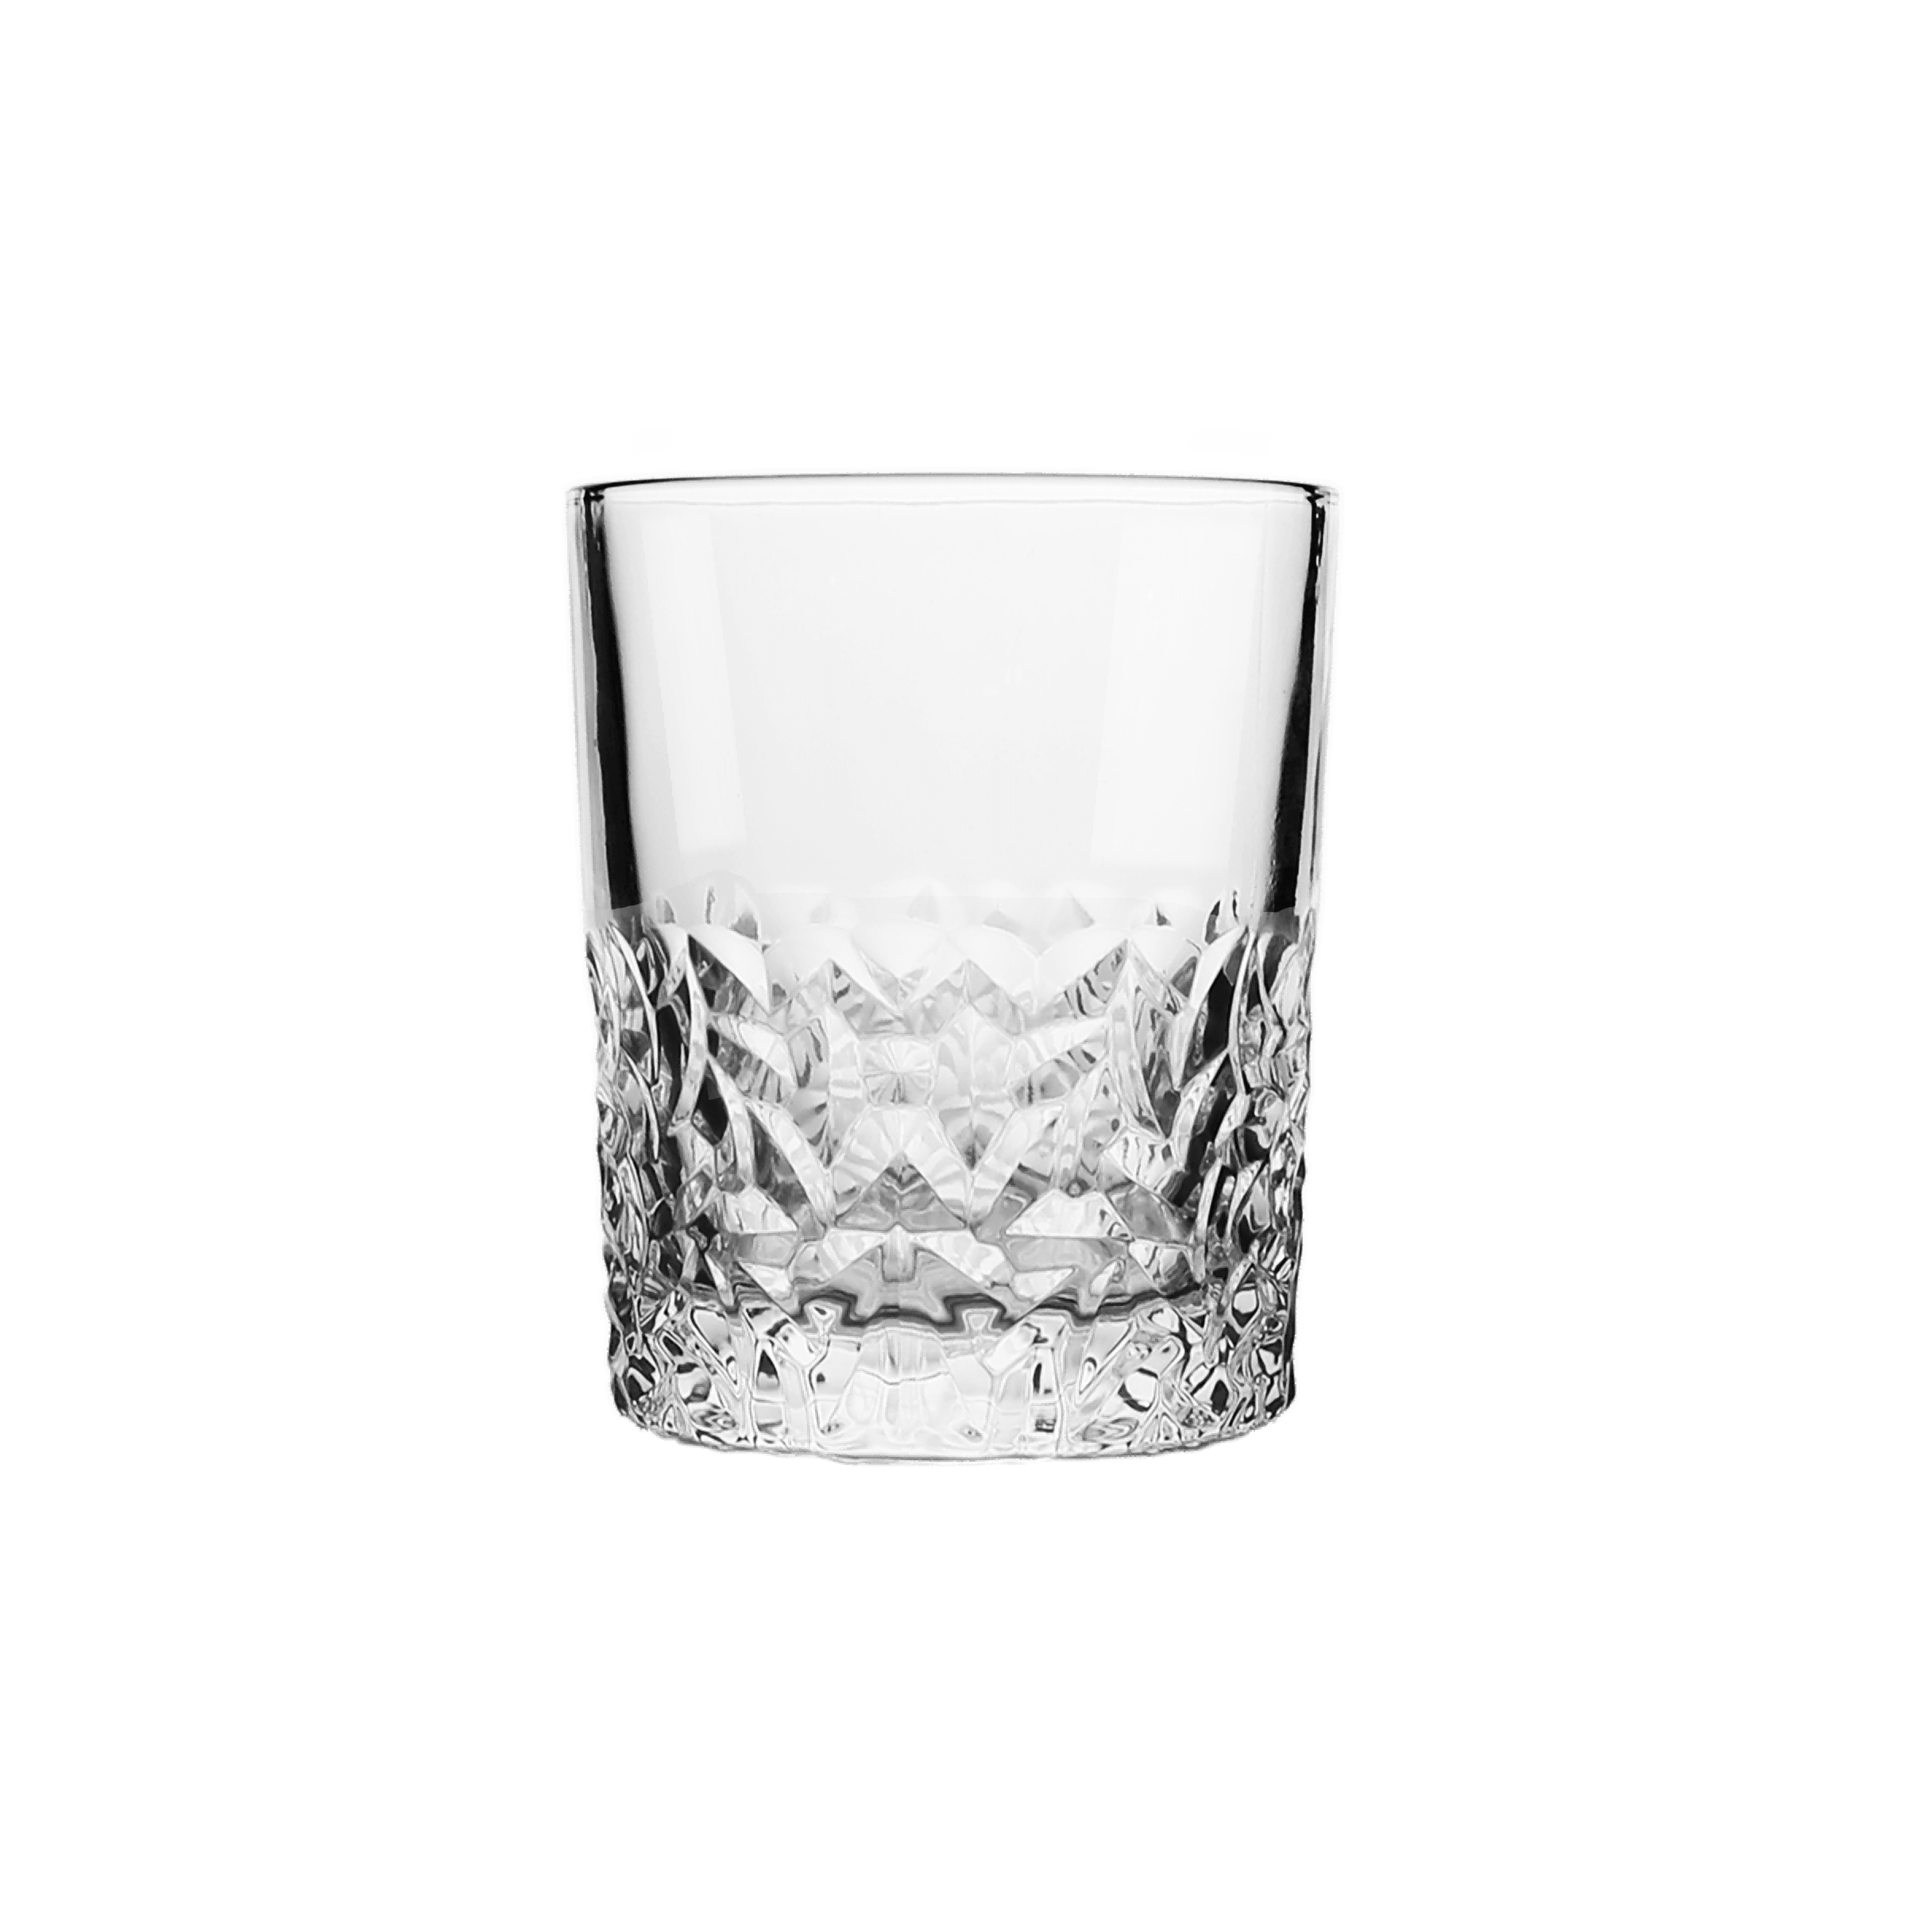 Detailed Designed Crystal Decanter with 6 Cups Set - Elegant Linen